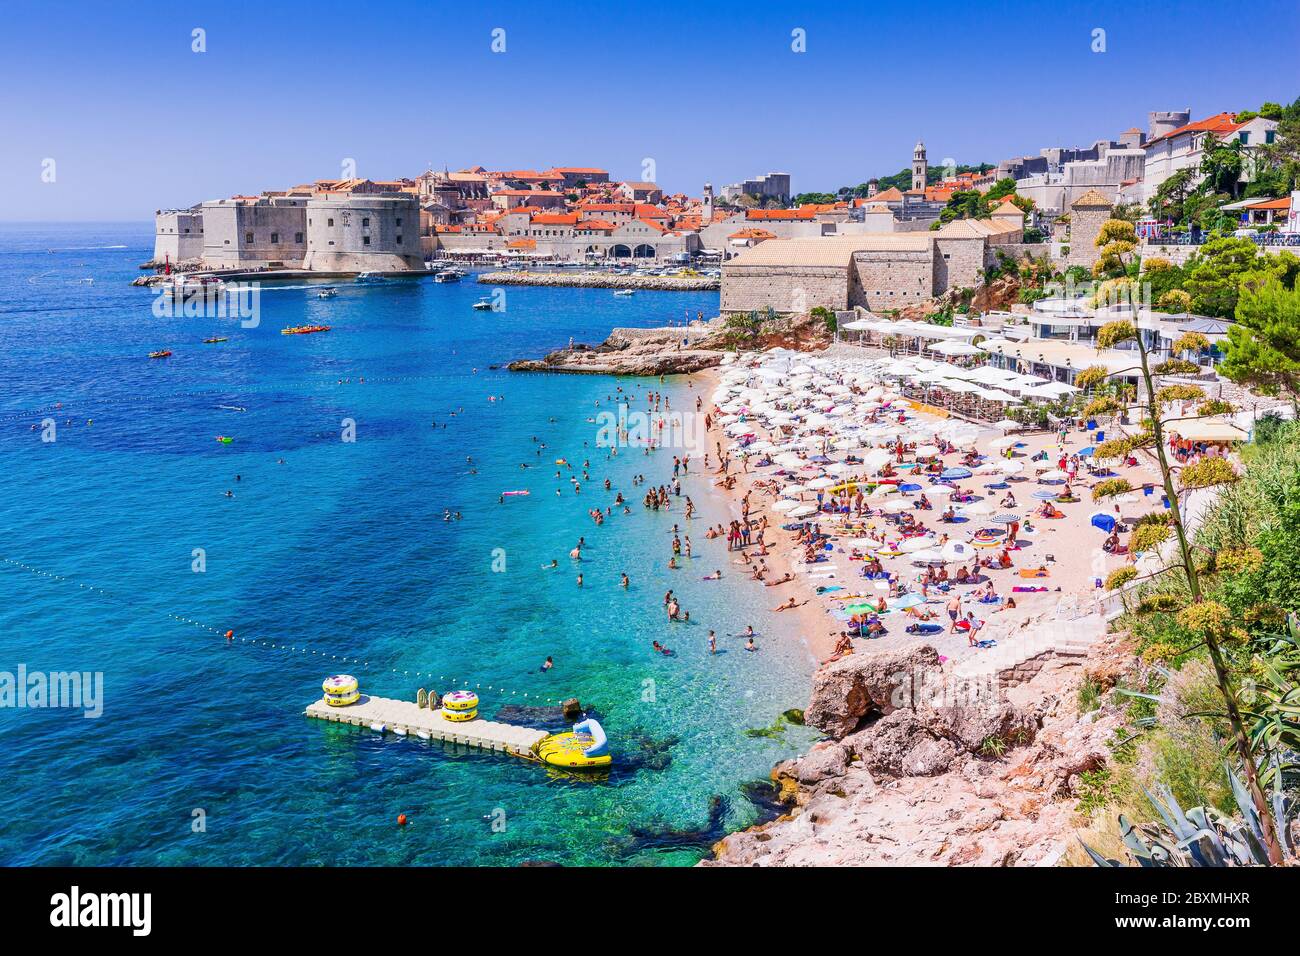 Dubrovnik, Kroatien. Öffentlicher Strand und Altstadt Dubrovnik. Stockfoto